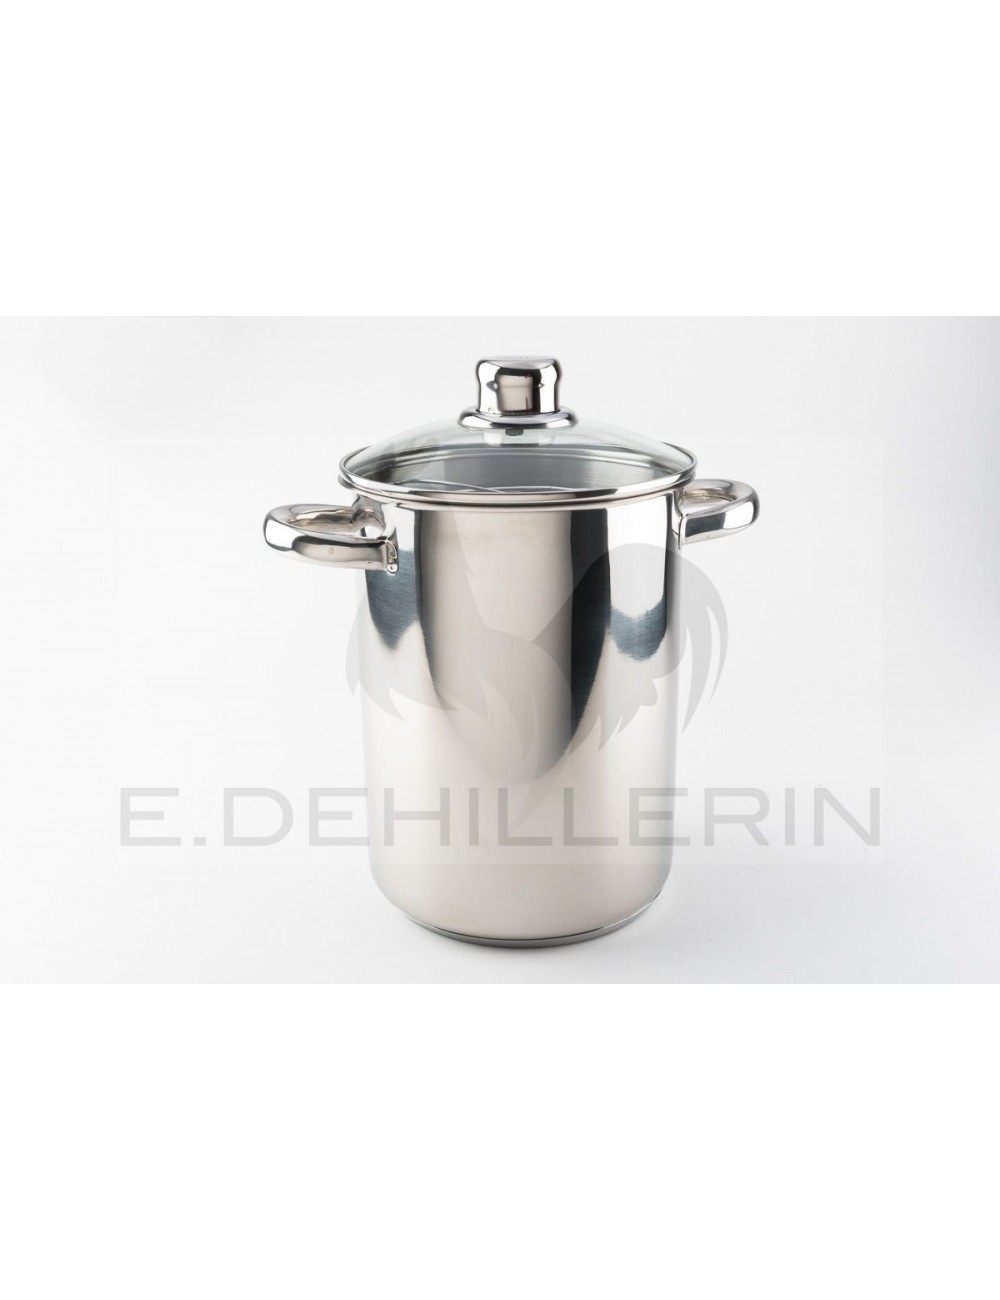 16cm Stainless Steel Steamer Basket Stockpot Pot Food Cooker Steam Pot